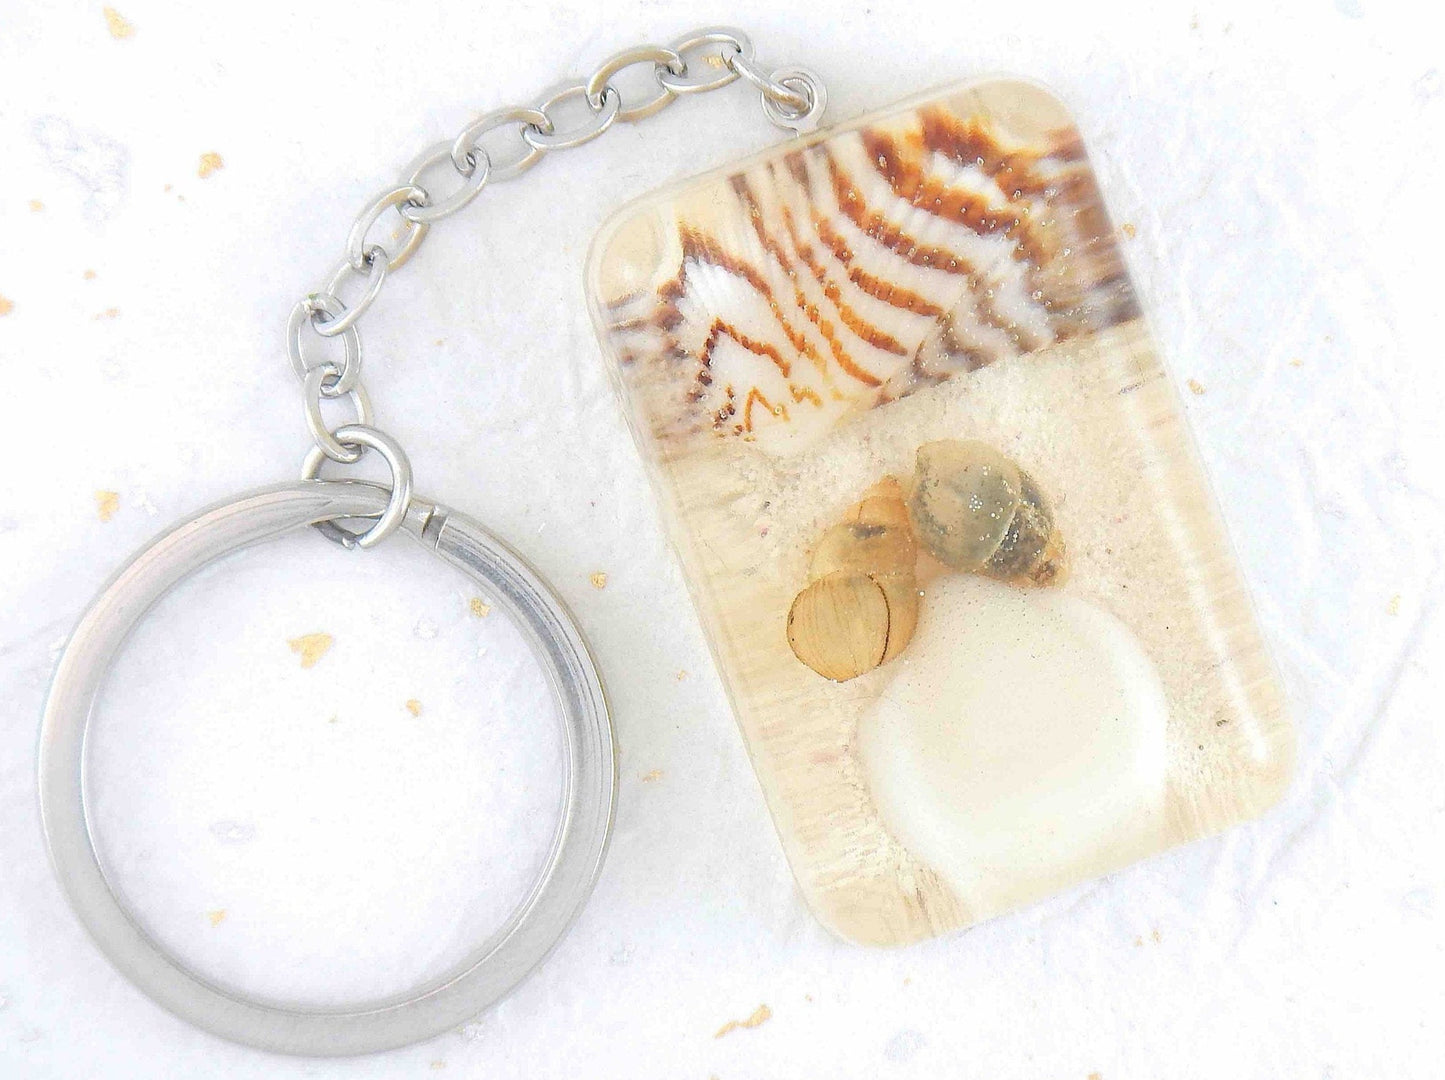 Porte-clés avec rectangle de résine fait main, sable blanc, coquillages rayés brun-blanc, chaîne acier inoxydable